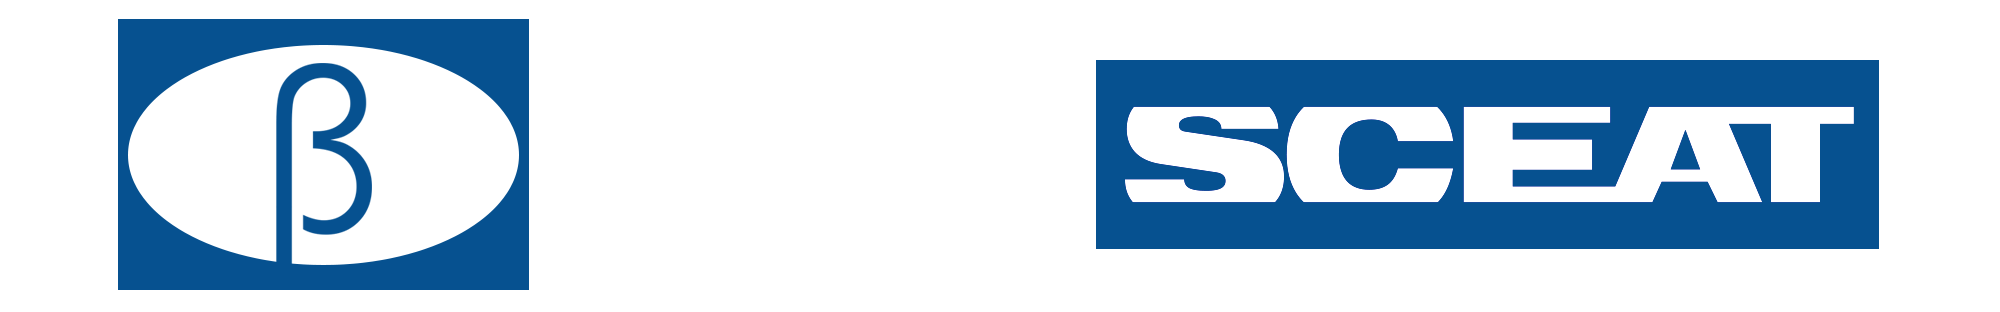 BE.TA Industries